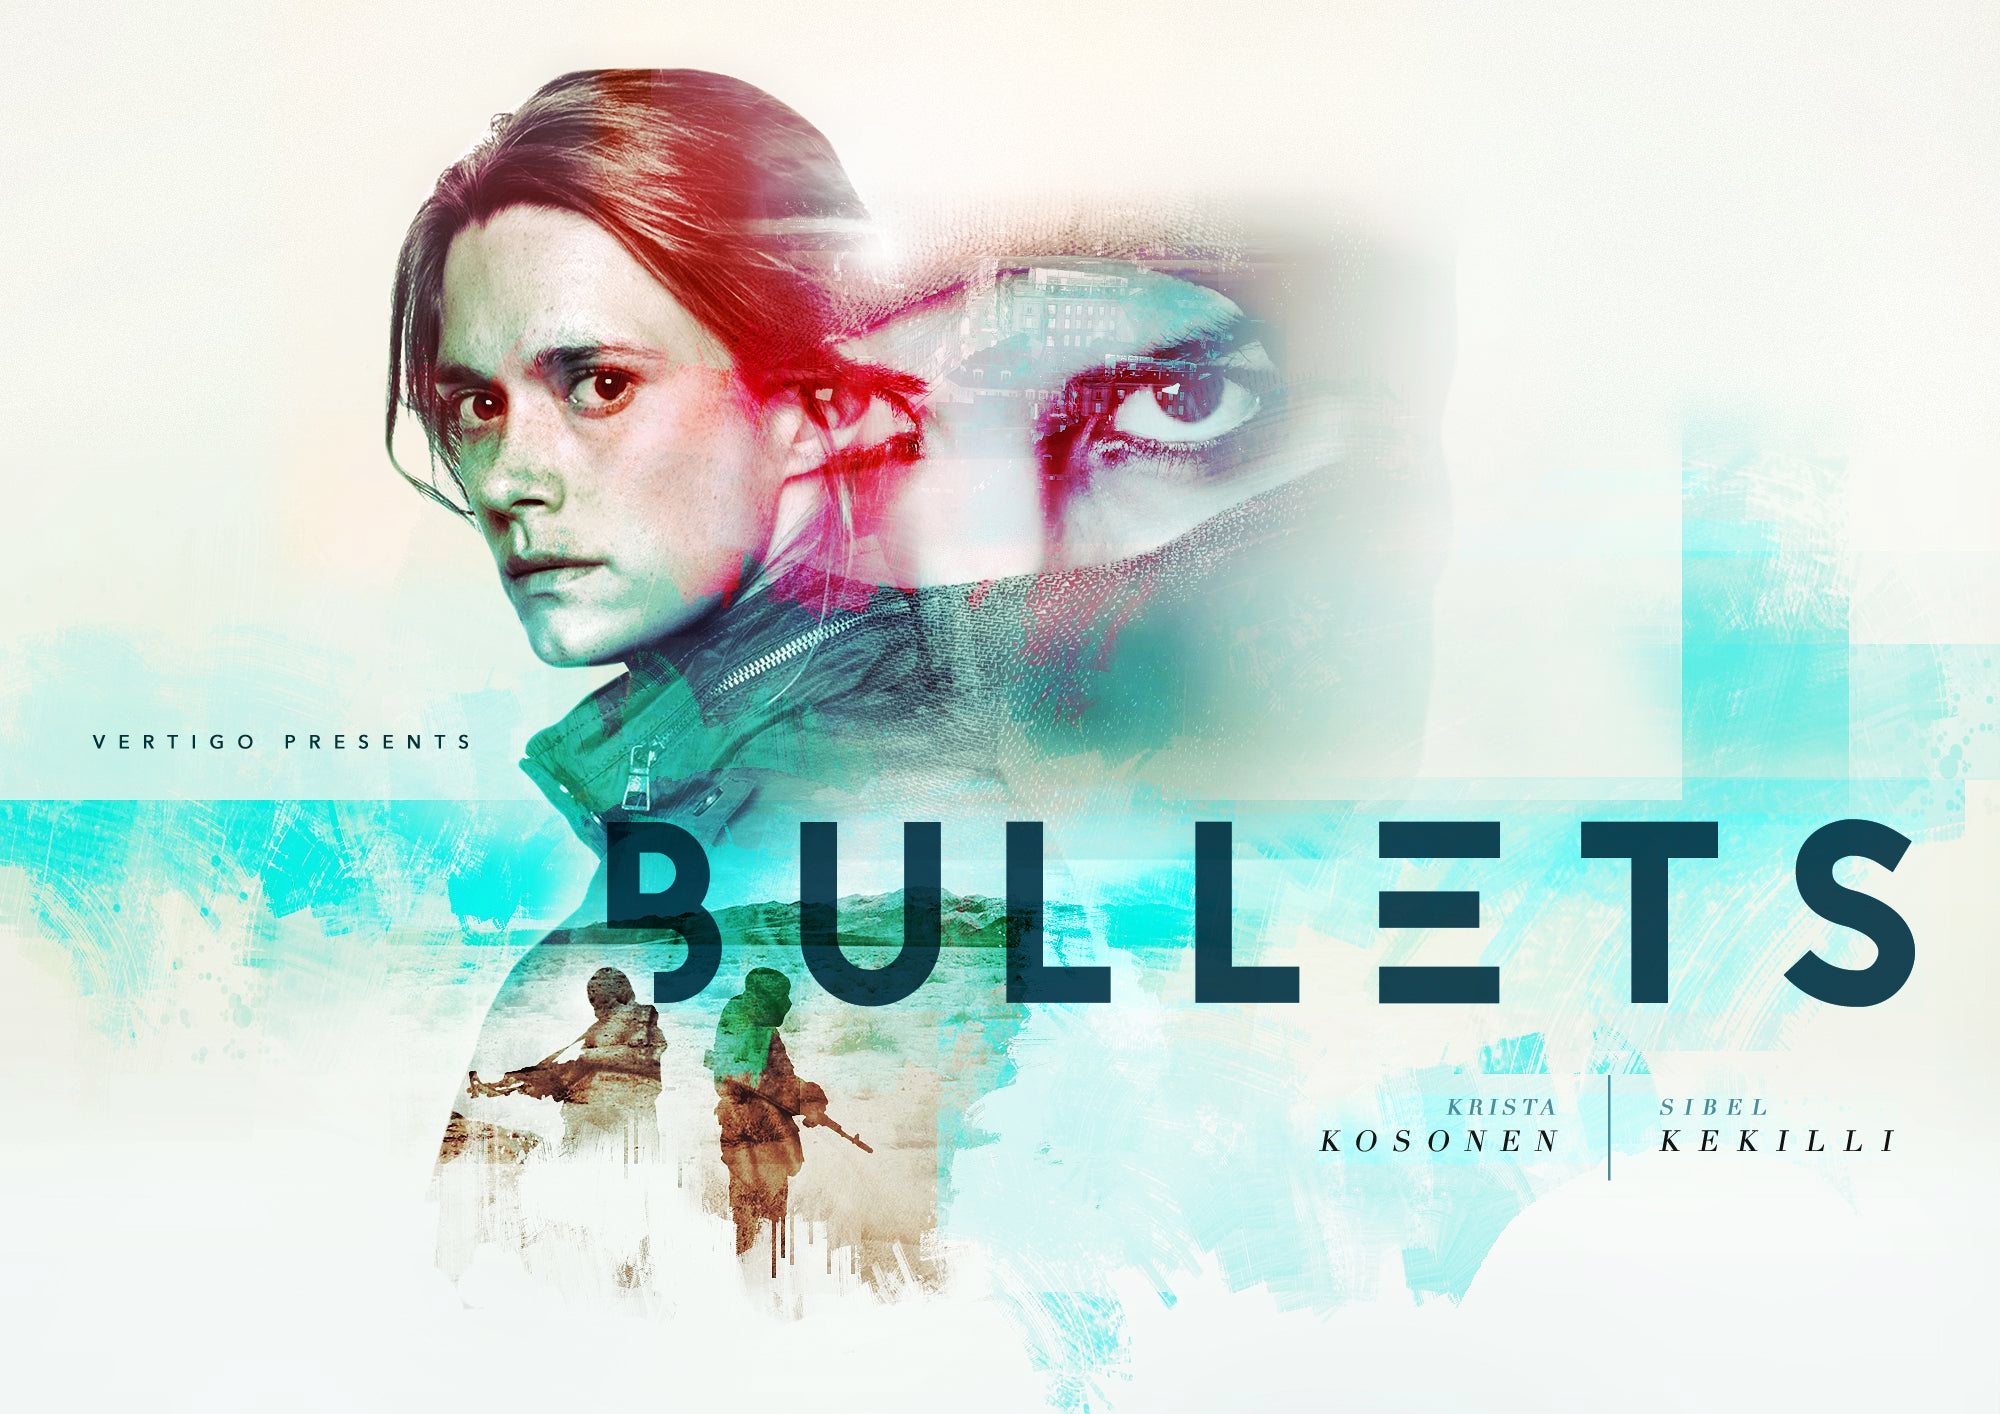 TV ratings for Bullets in Russia. Elisa Viihde TV series